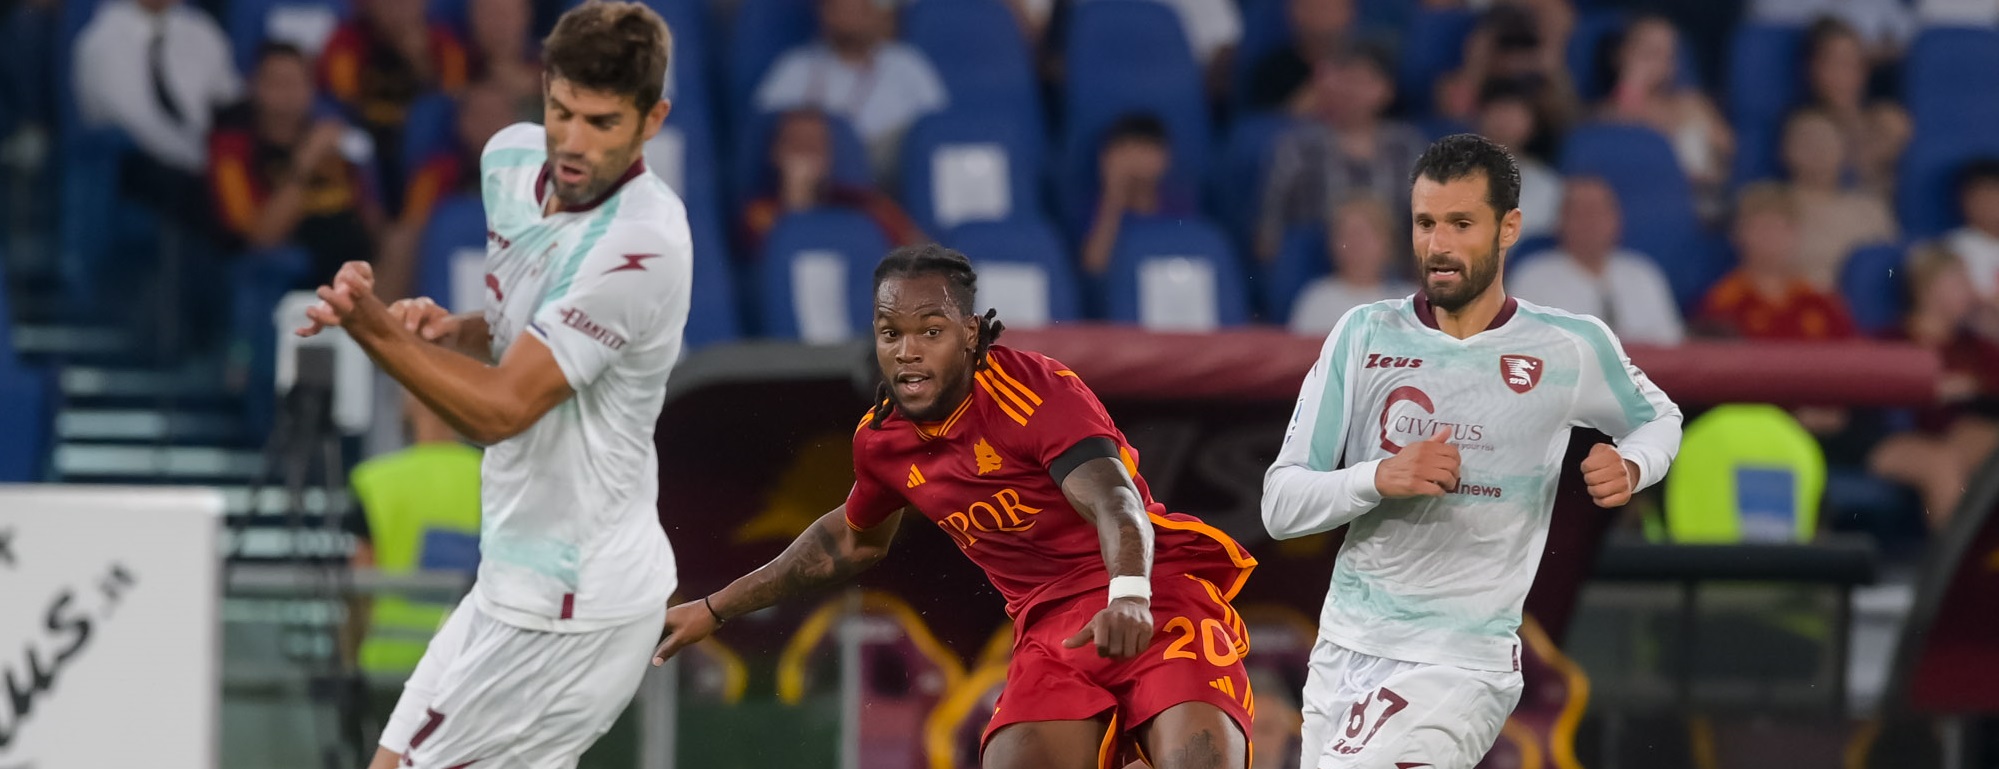 AS Roma dan Salernitana Bermain Imbang 2-2